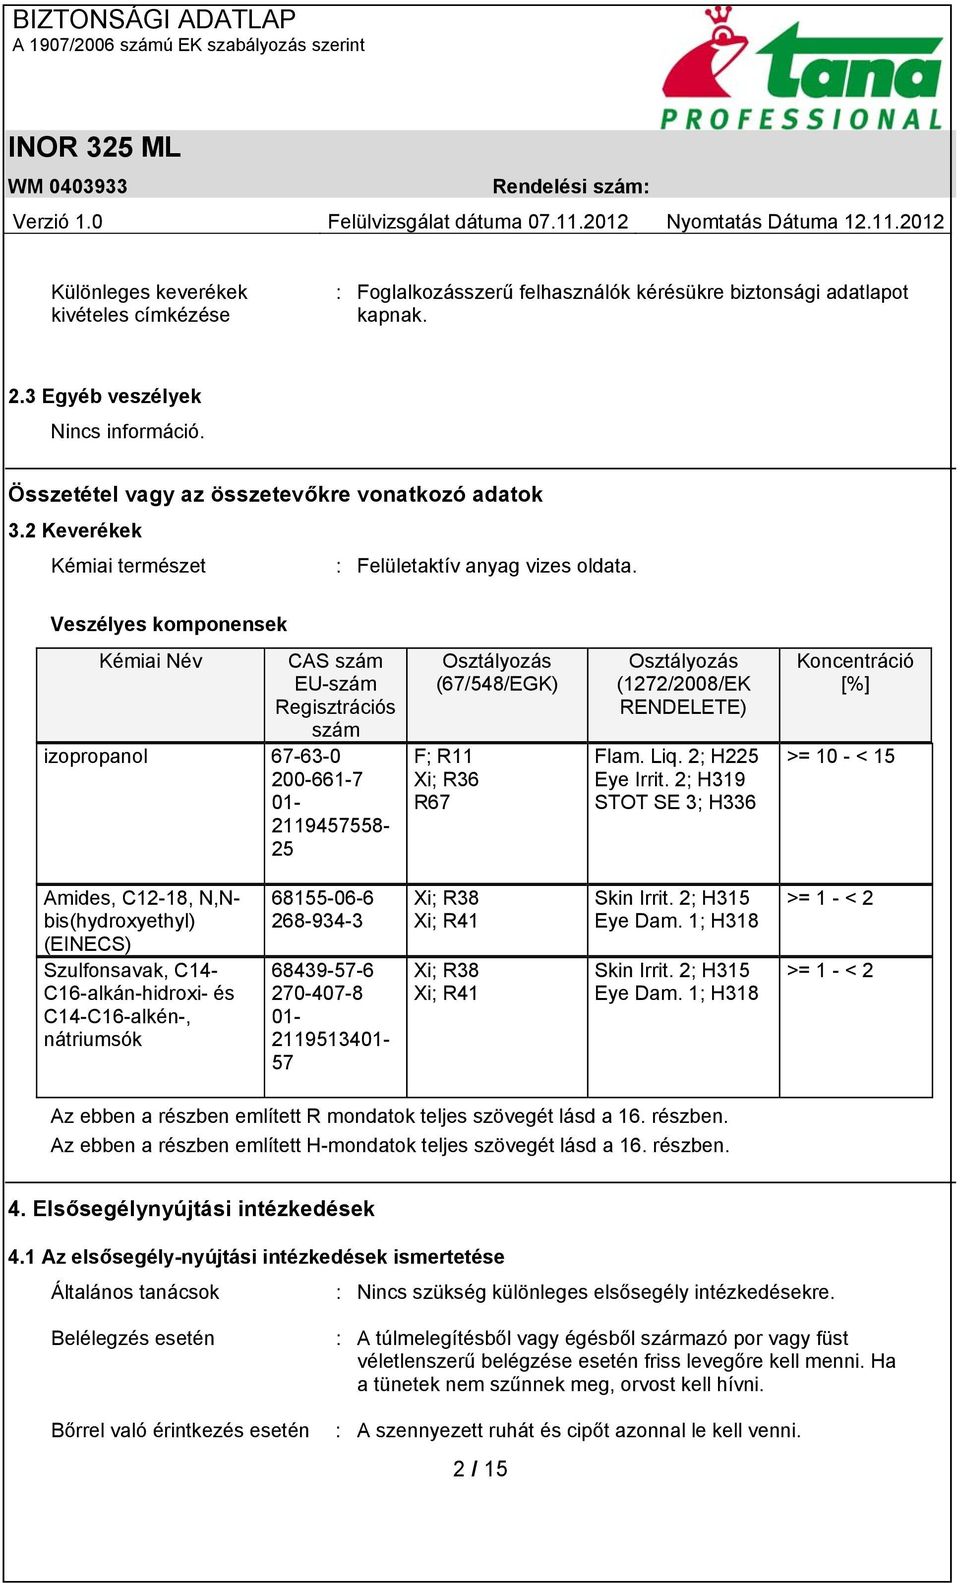 Veszélyes komponensek Kémiai Név CAS szám EU-szám Regisztrációs szám izopropanol 67-63-0 200-661-7 01-2119457558- 25 Osztályozás (67/548/EGK) F; R11 Xi; R36 R67 Osztályozás (1272/2008/EK RENDELETE)